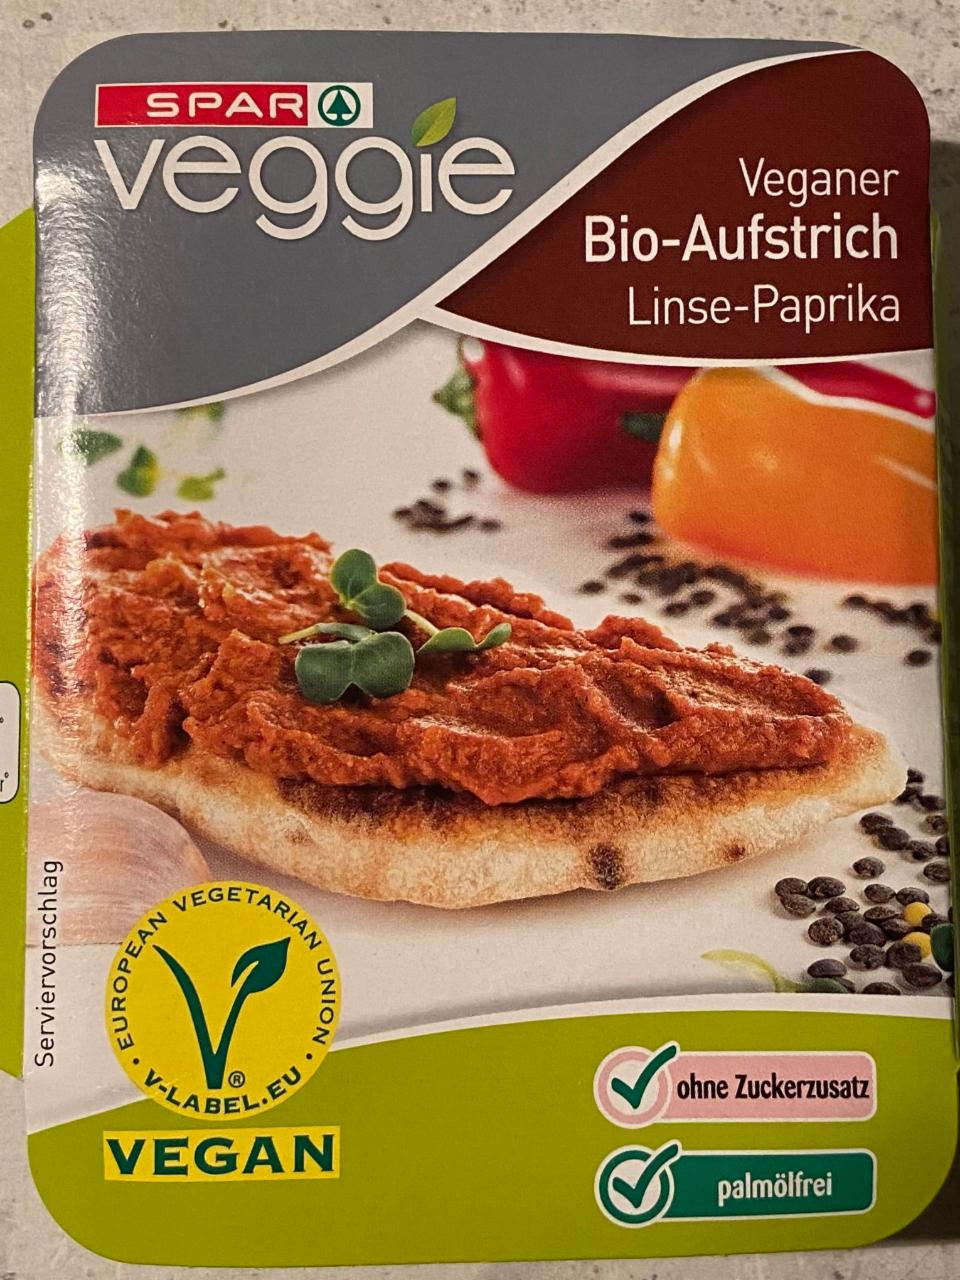 Fotografie - Veganer Bio-aufstrich linse-paprika Spar veggie